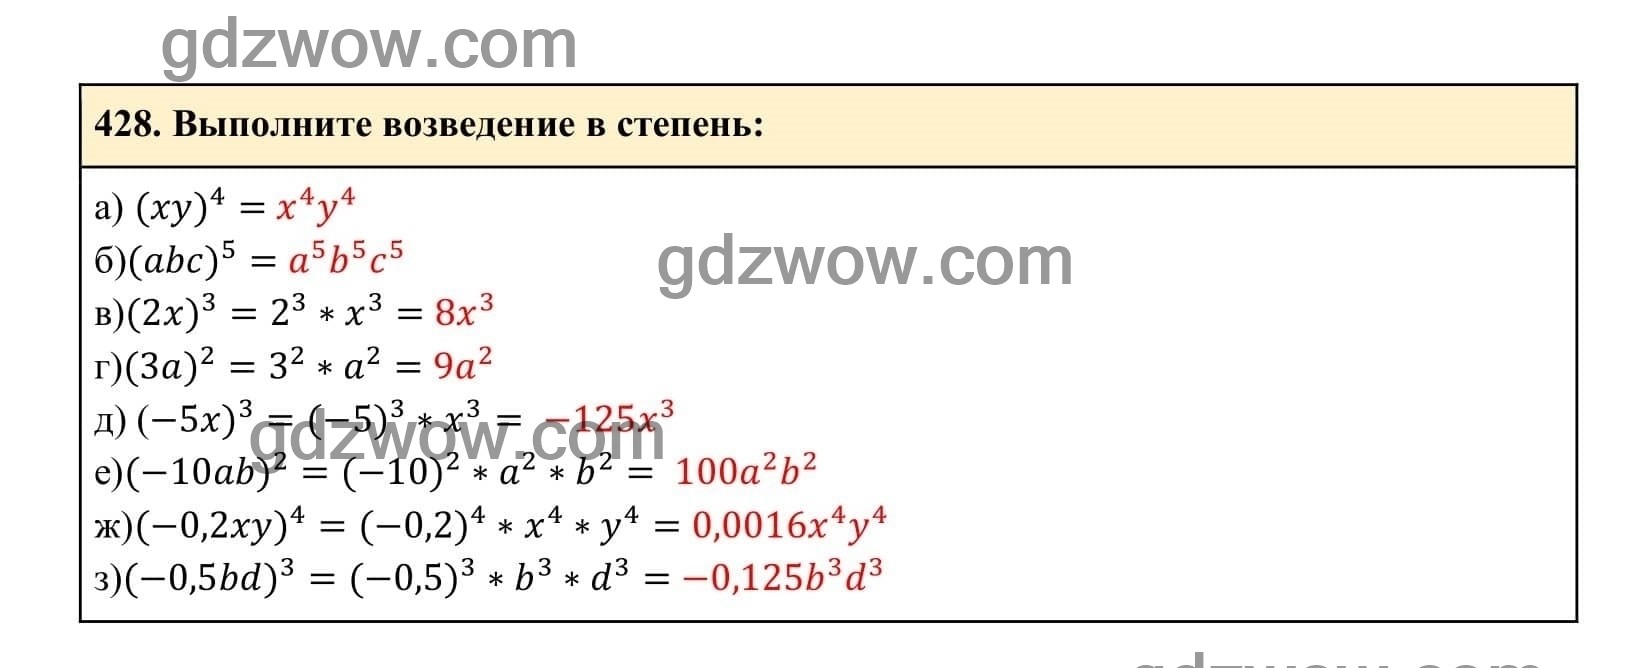 Упражнение 428 - ГДЗ по Алгебре 7 класс Учебник Макарычев (решебник) - GDZwow